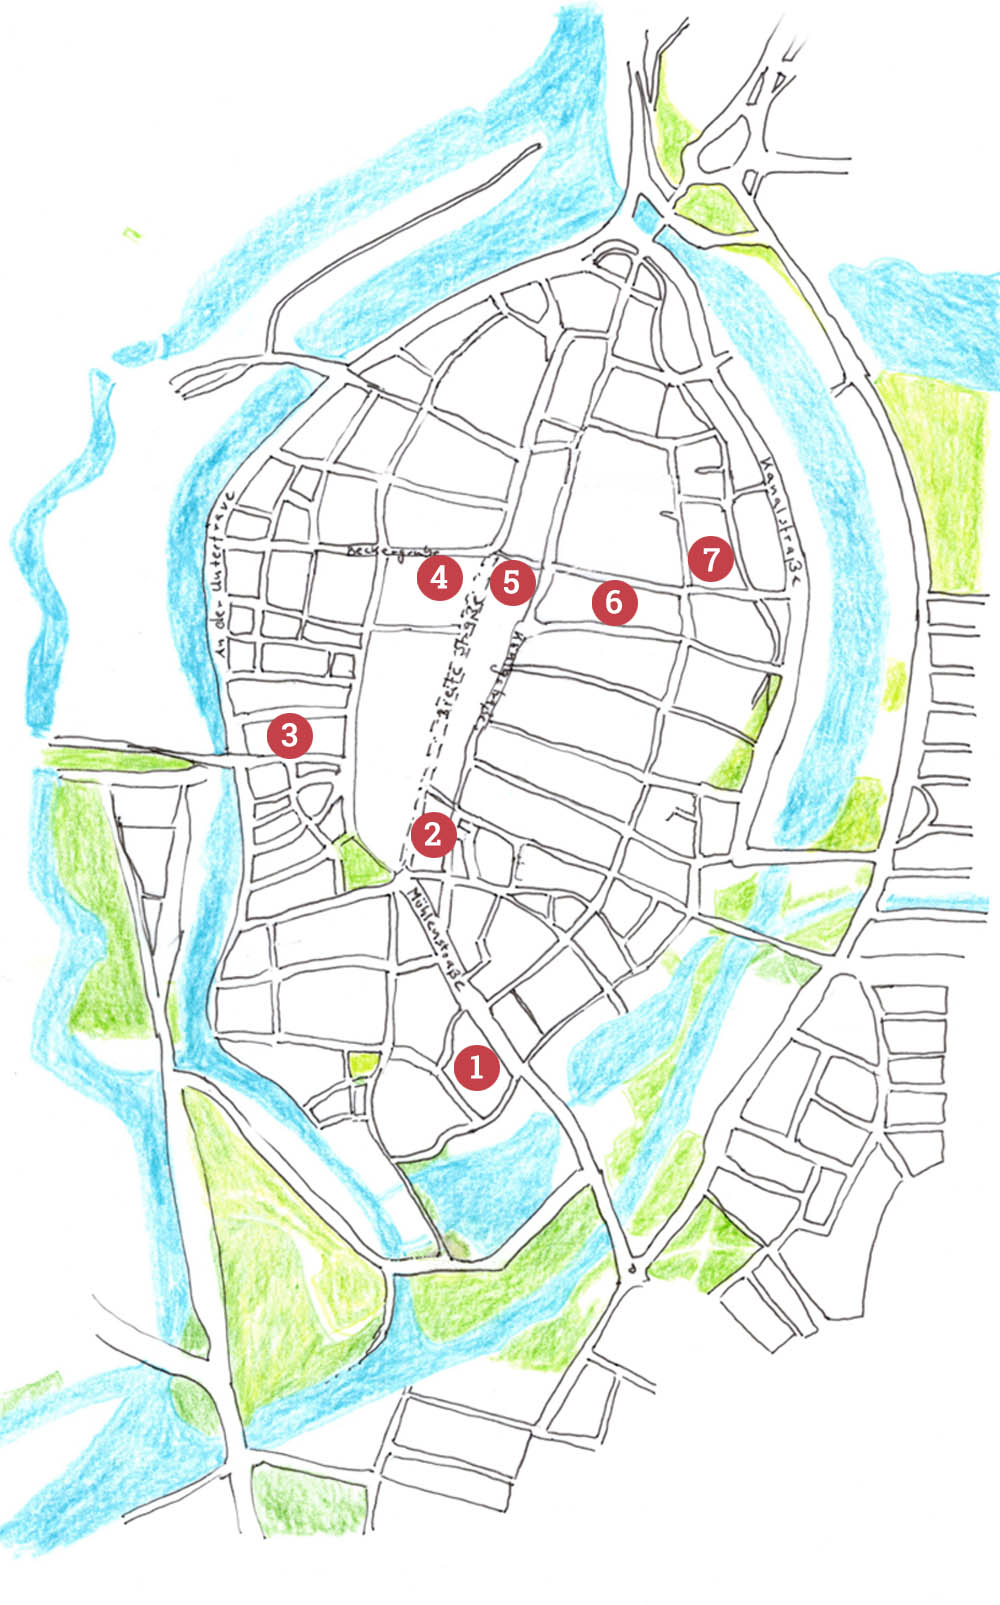 Karte von Lübeck mit markierten Orten